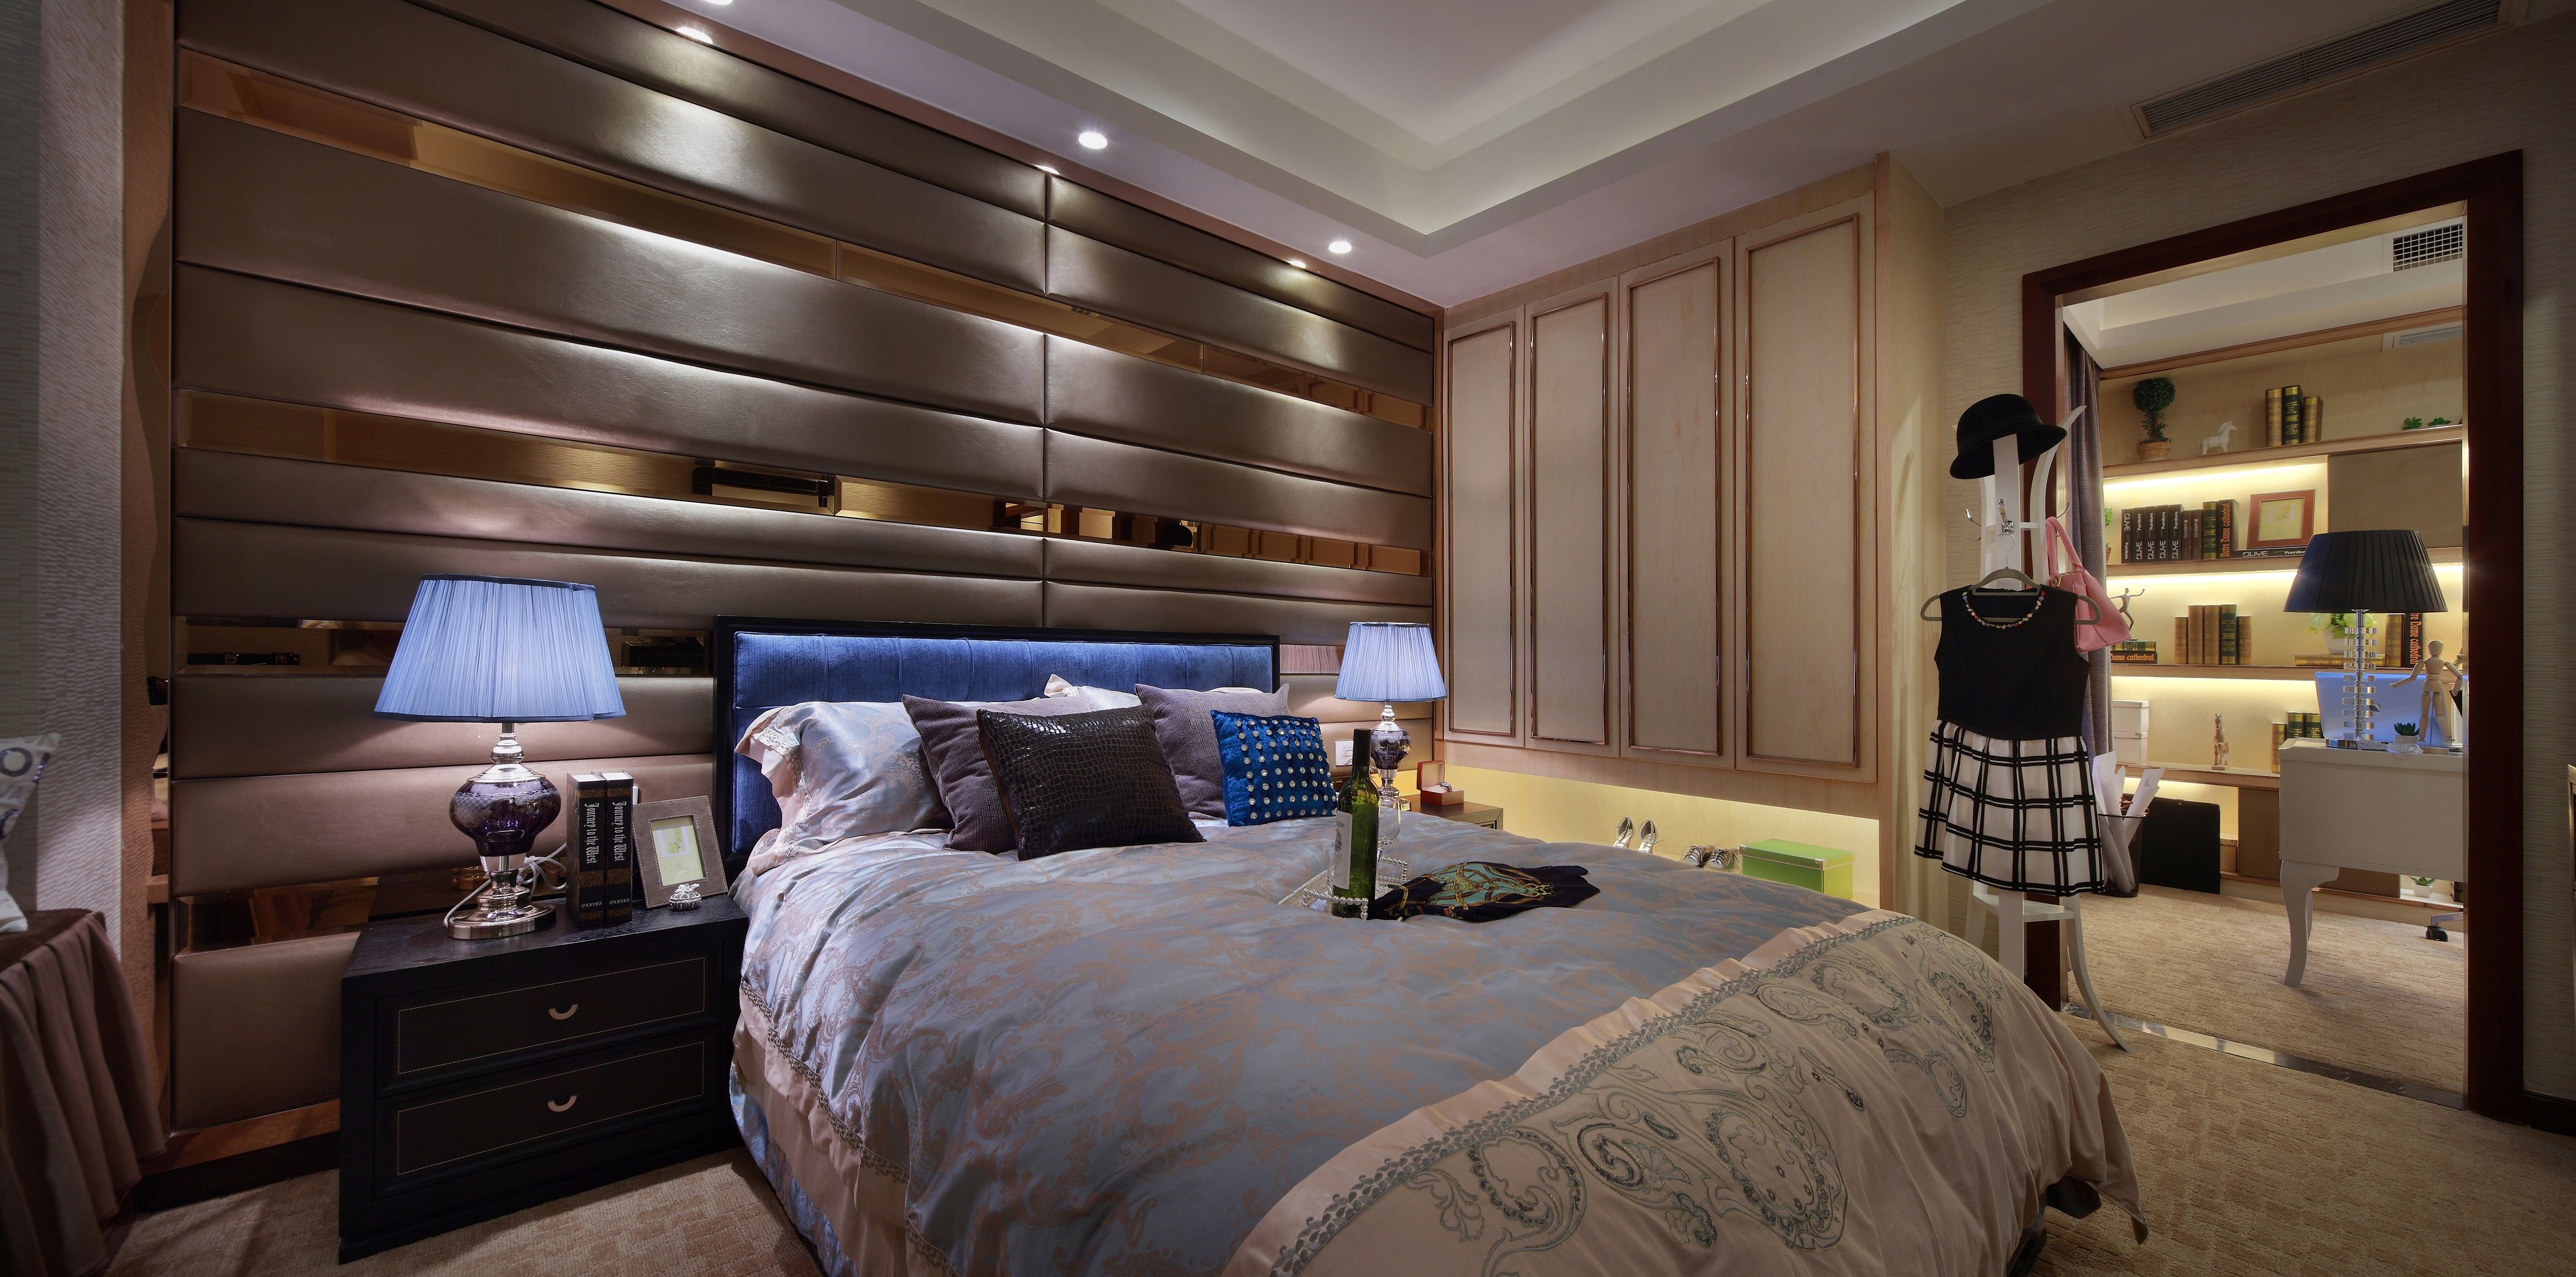 三居 欧式 卧室图片来自云南俊雅装饰工程有限公司在丹槿园的分享